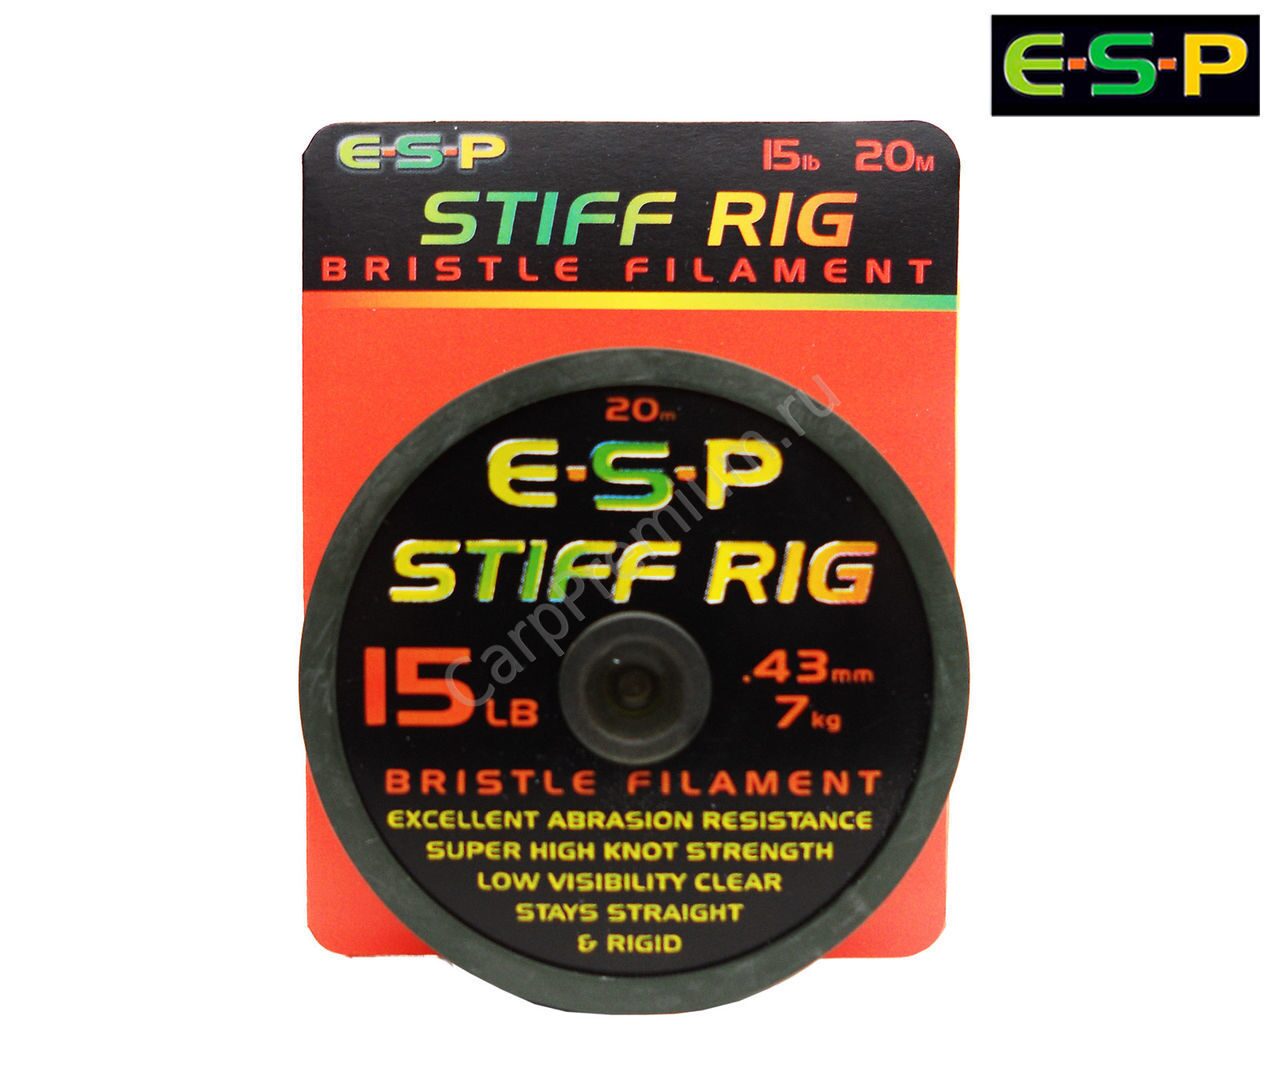 Поводковый материал жёсткий моно ESP (ЕСП) - Stiff Rig Filament 6.8 кг / 15 lb, 20 м